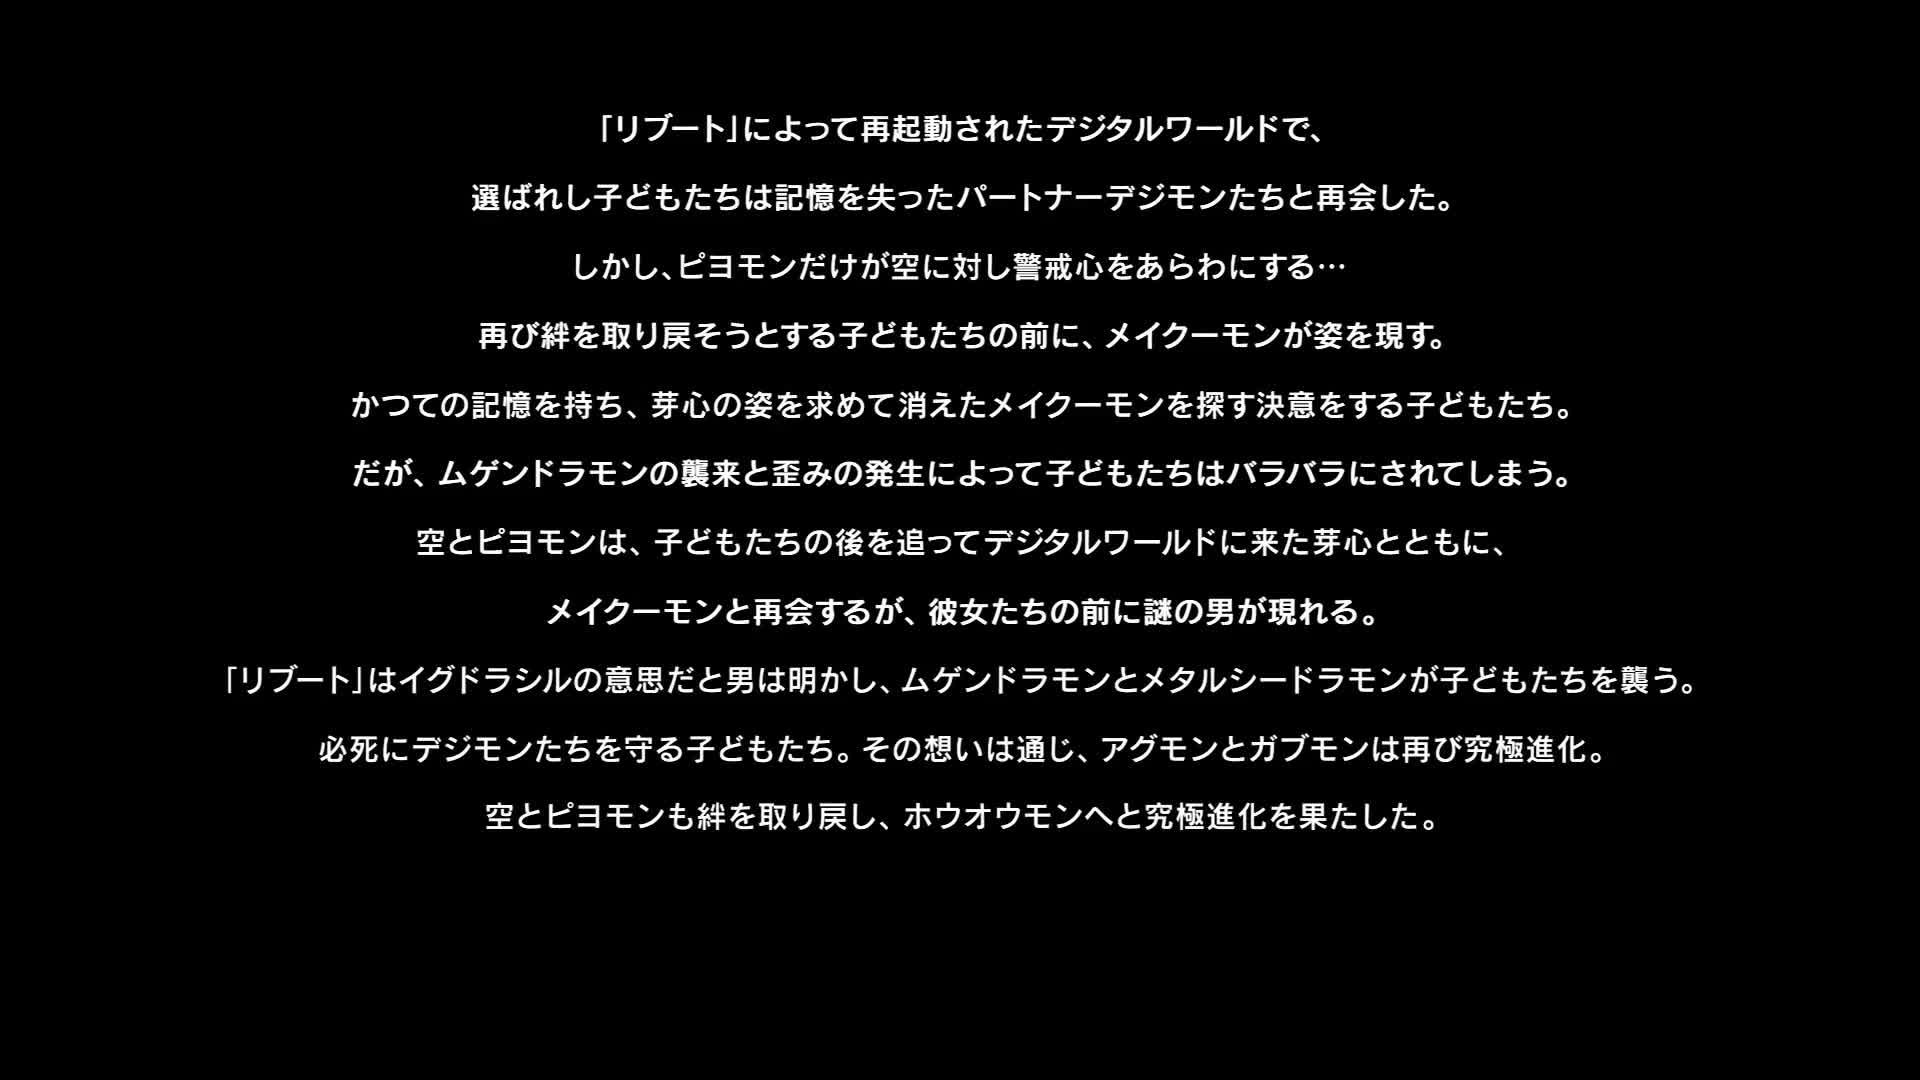 Digimon Adventure tri. 5: Kyousei (Dub)